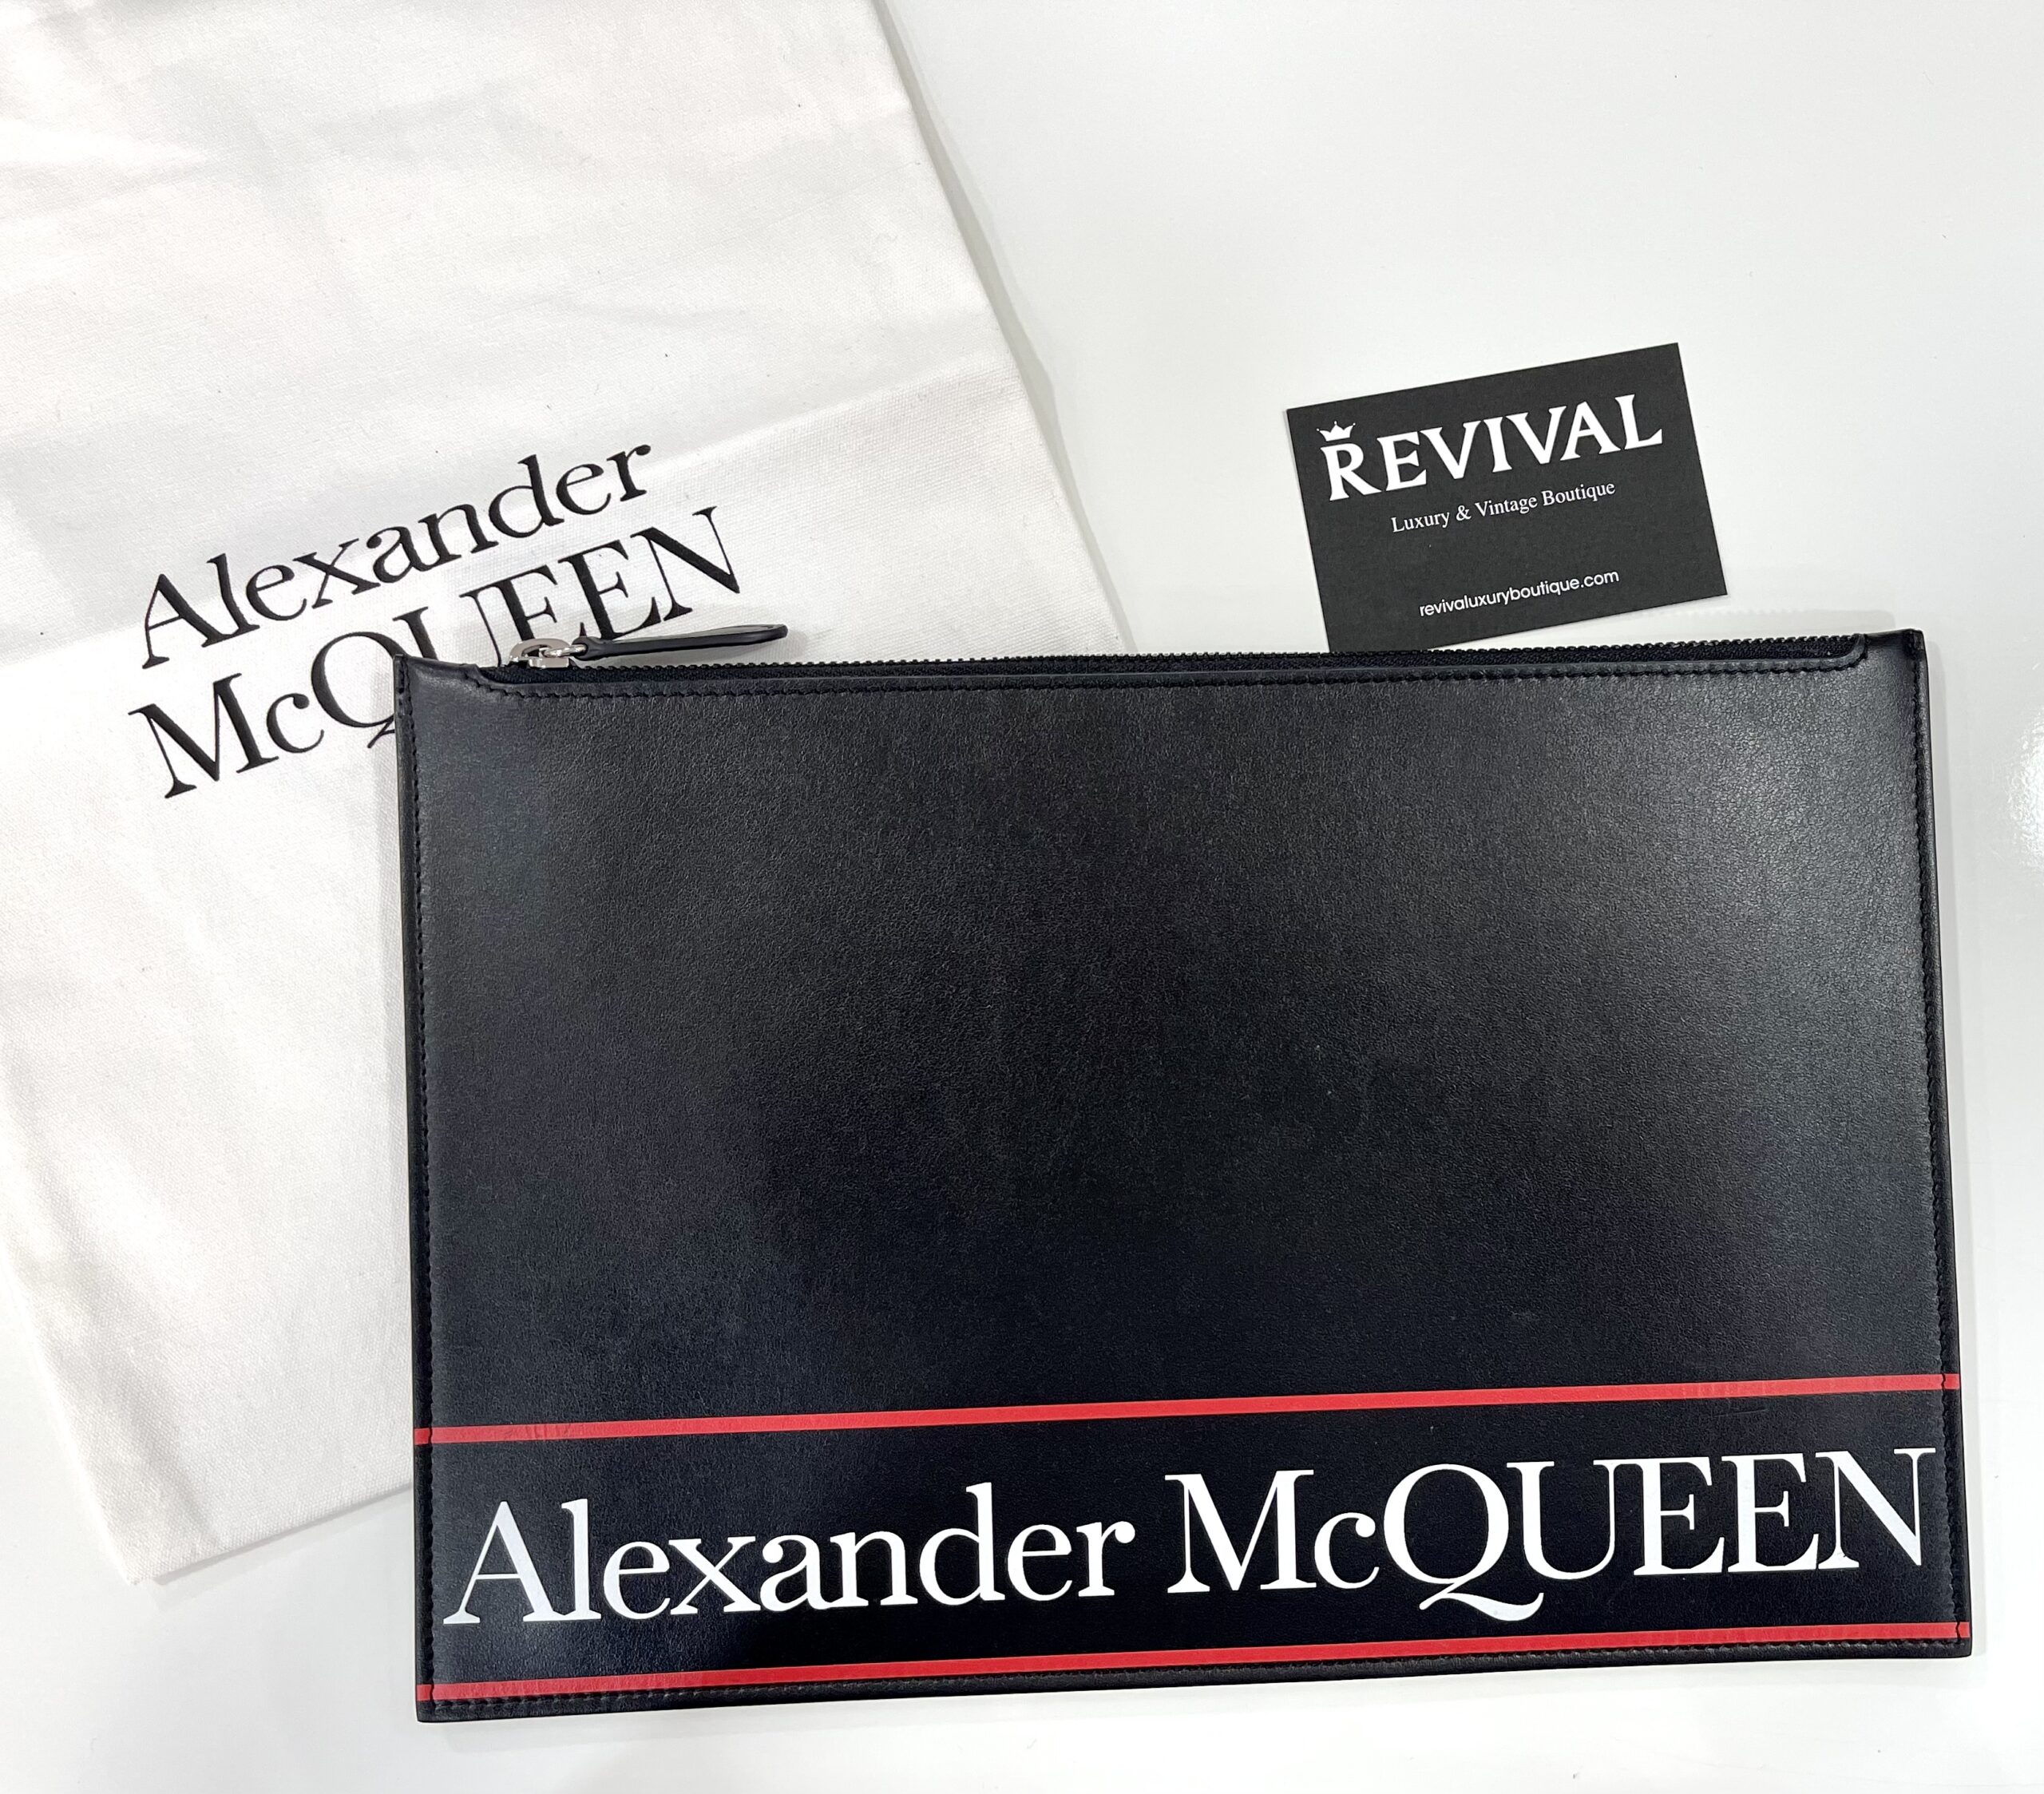 Alexander McQueen Pochette pelle nera stampa logo